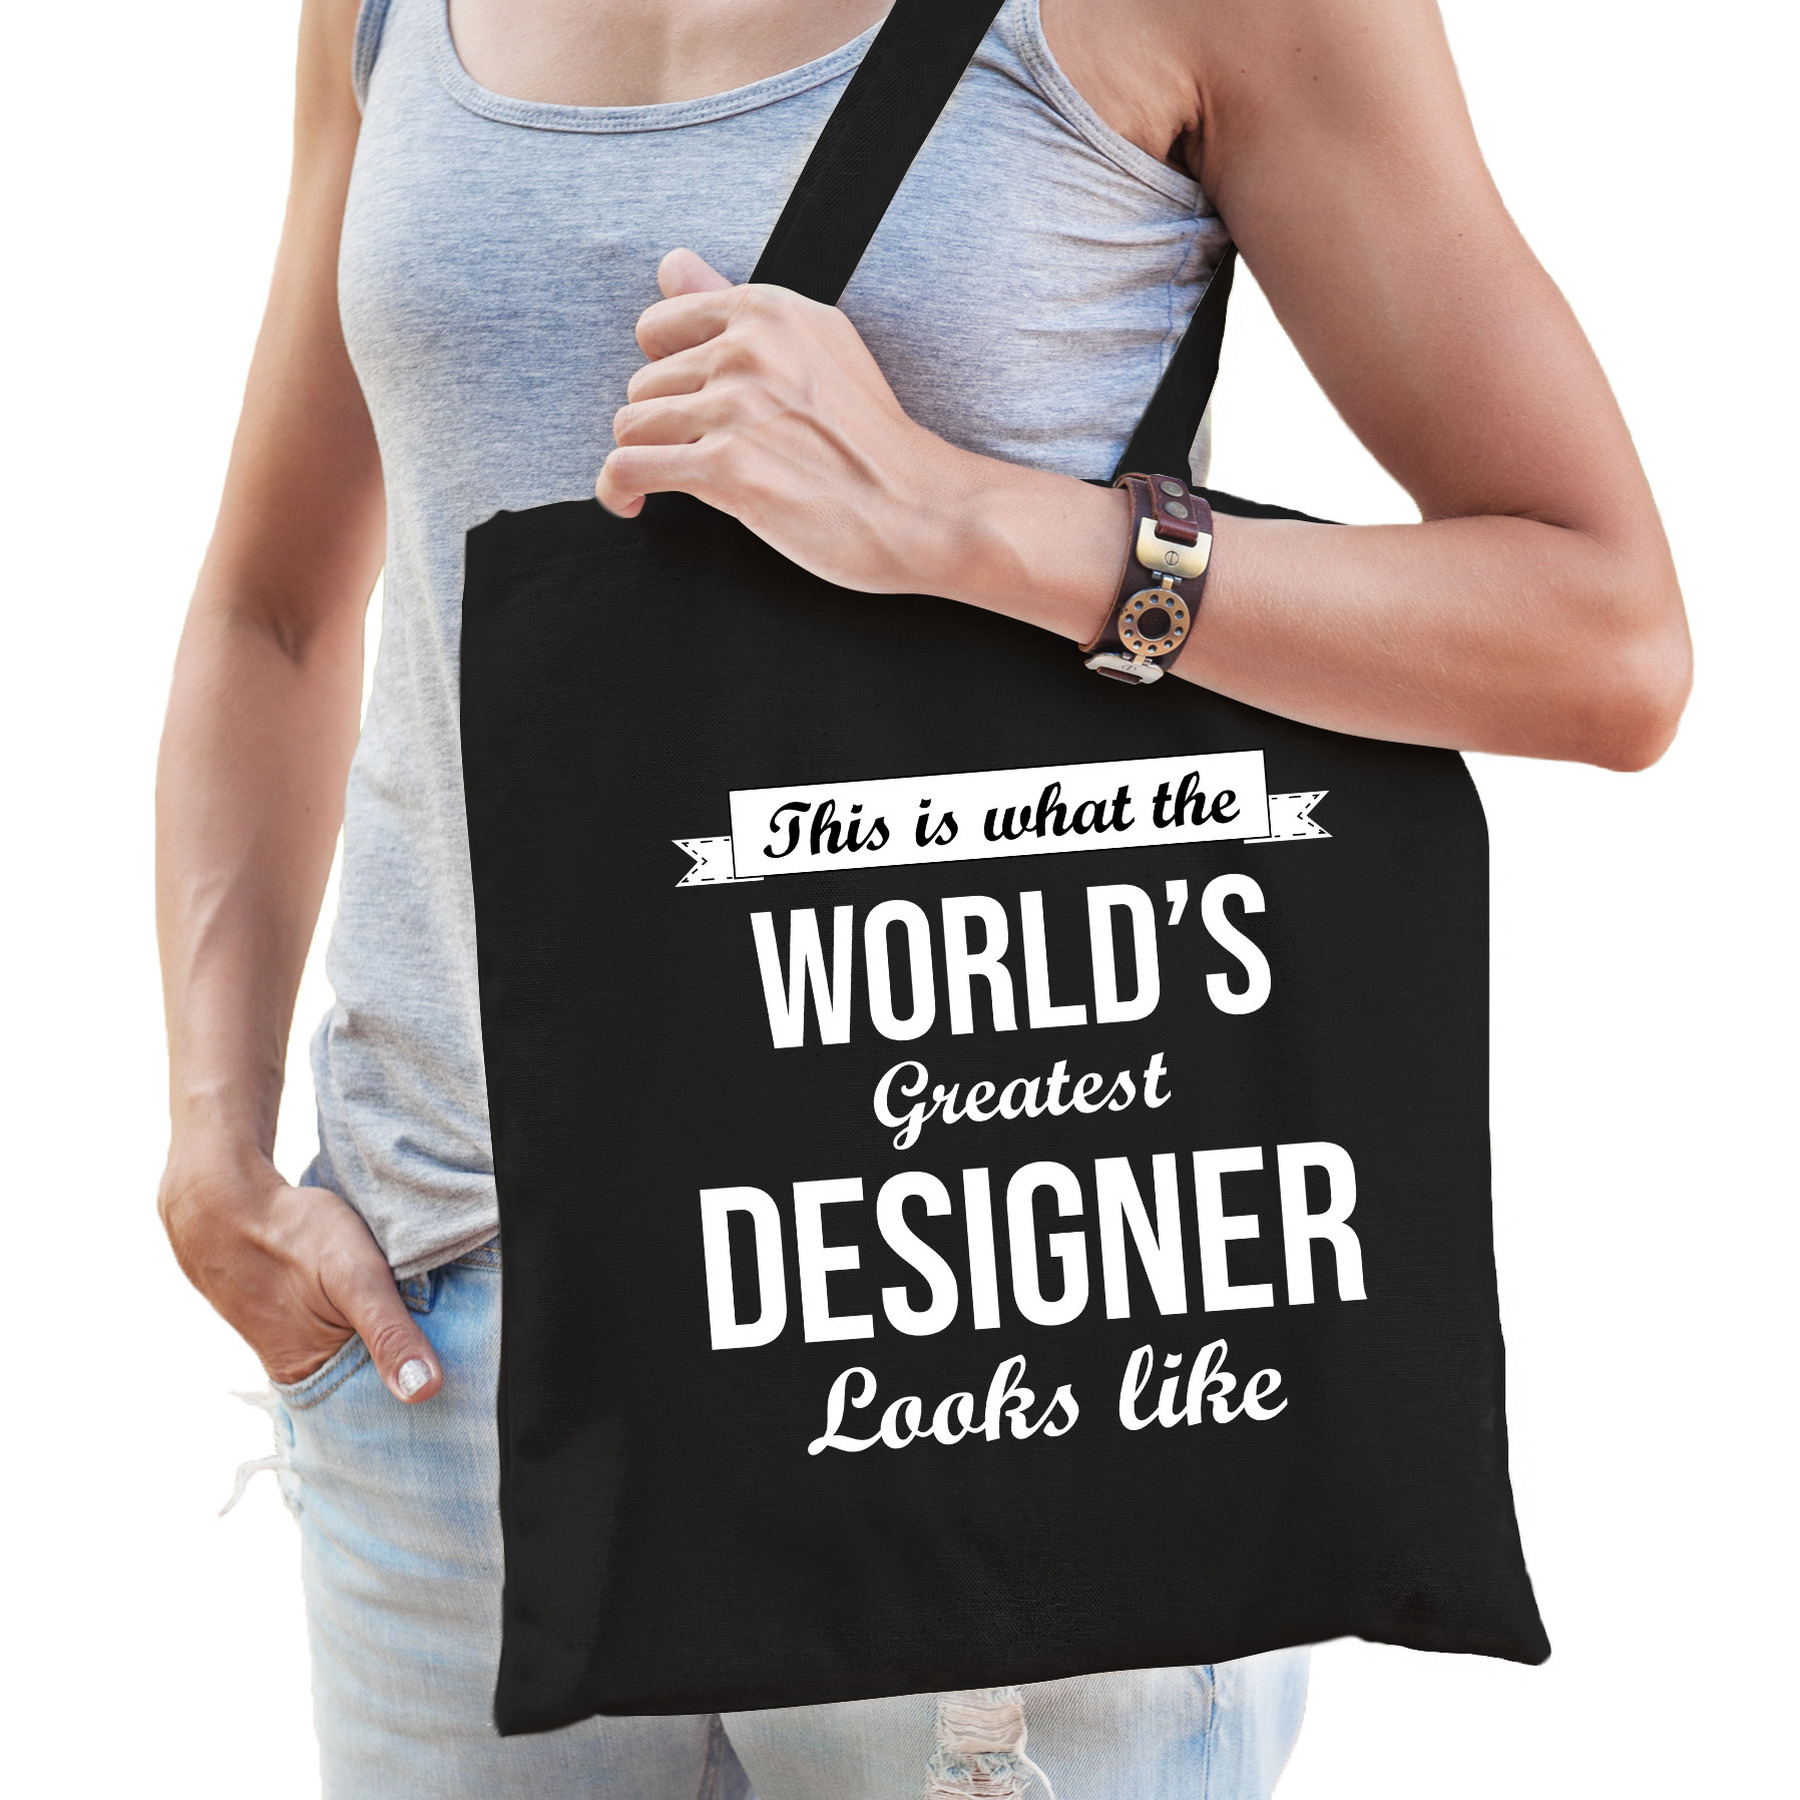 Worlds greatest designer tas zwart volwassenen - werelds beste ontwerper cadeau tas